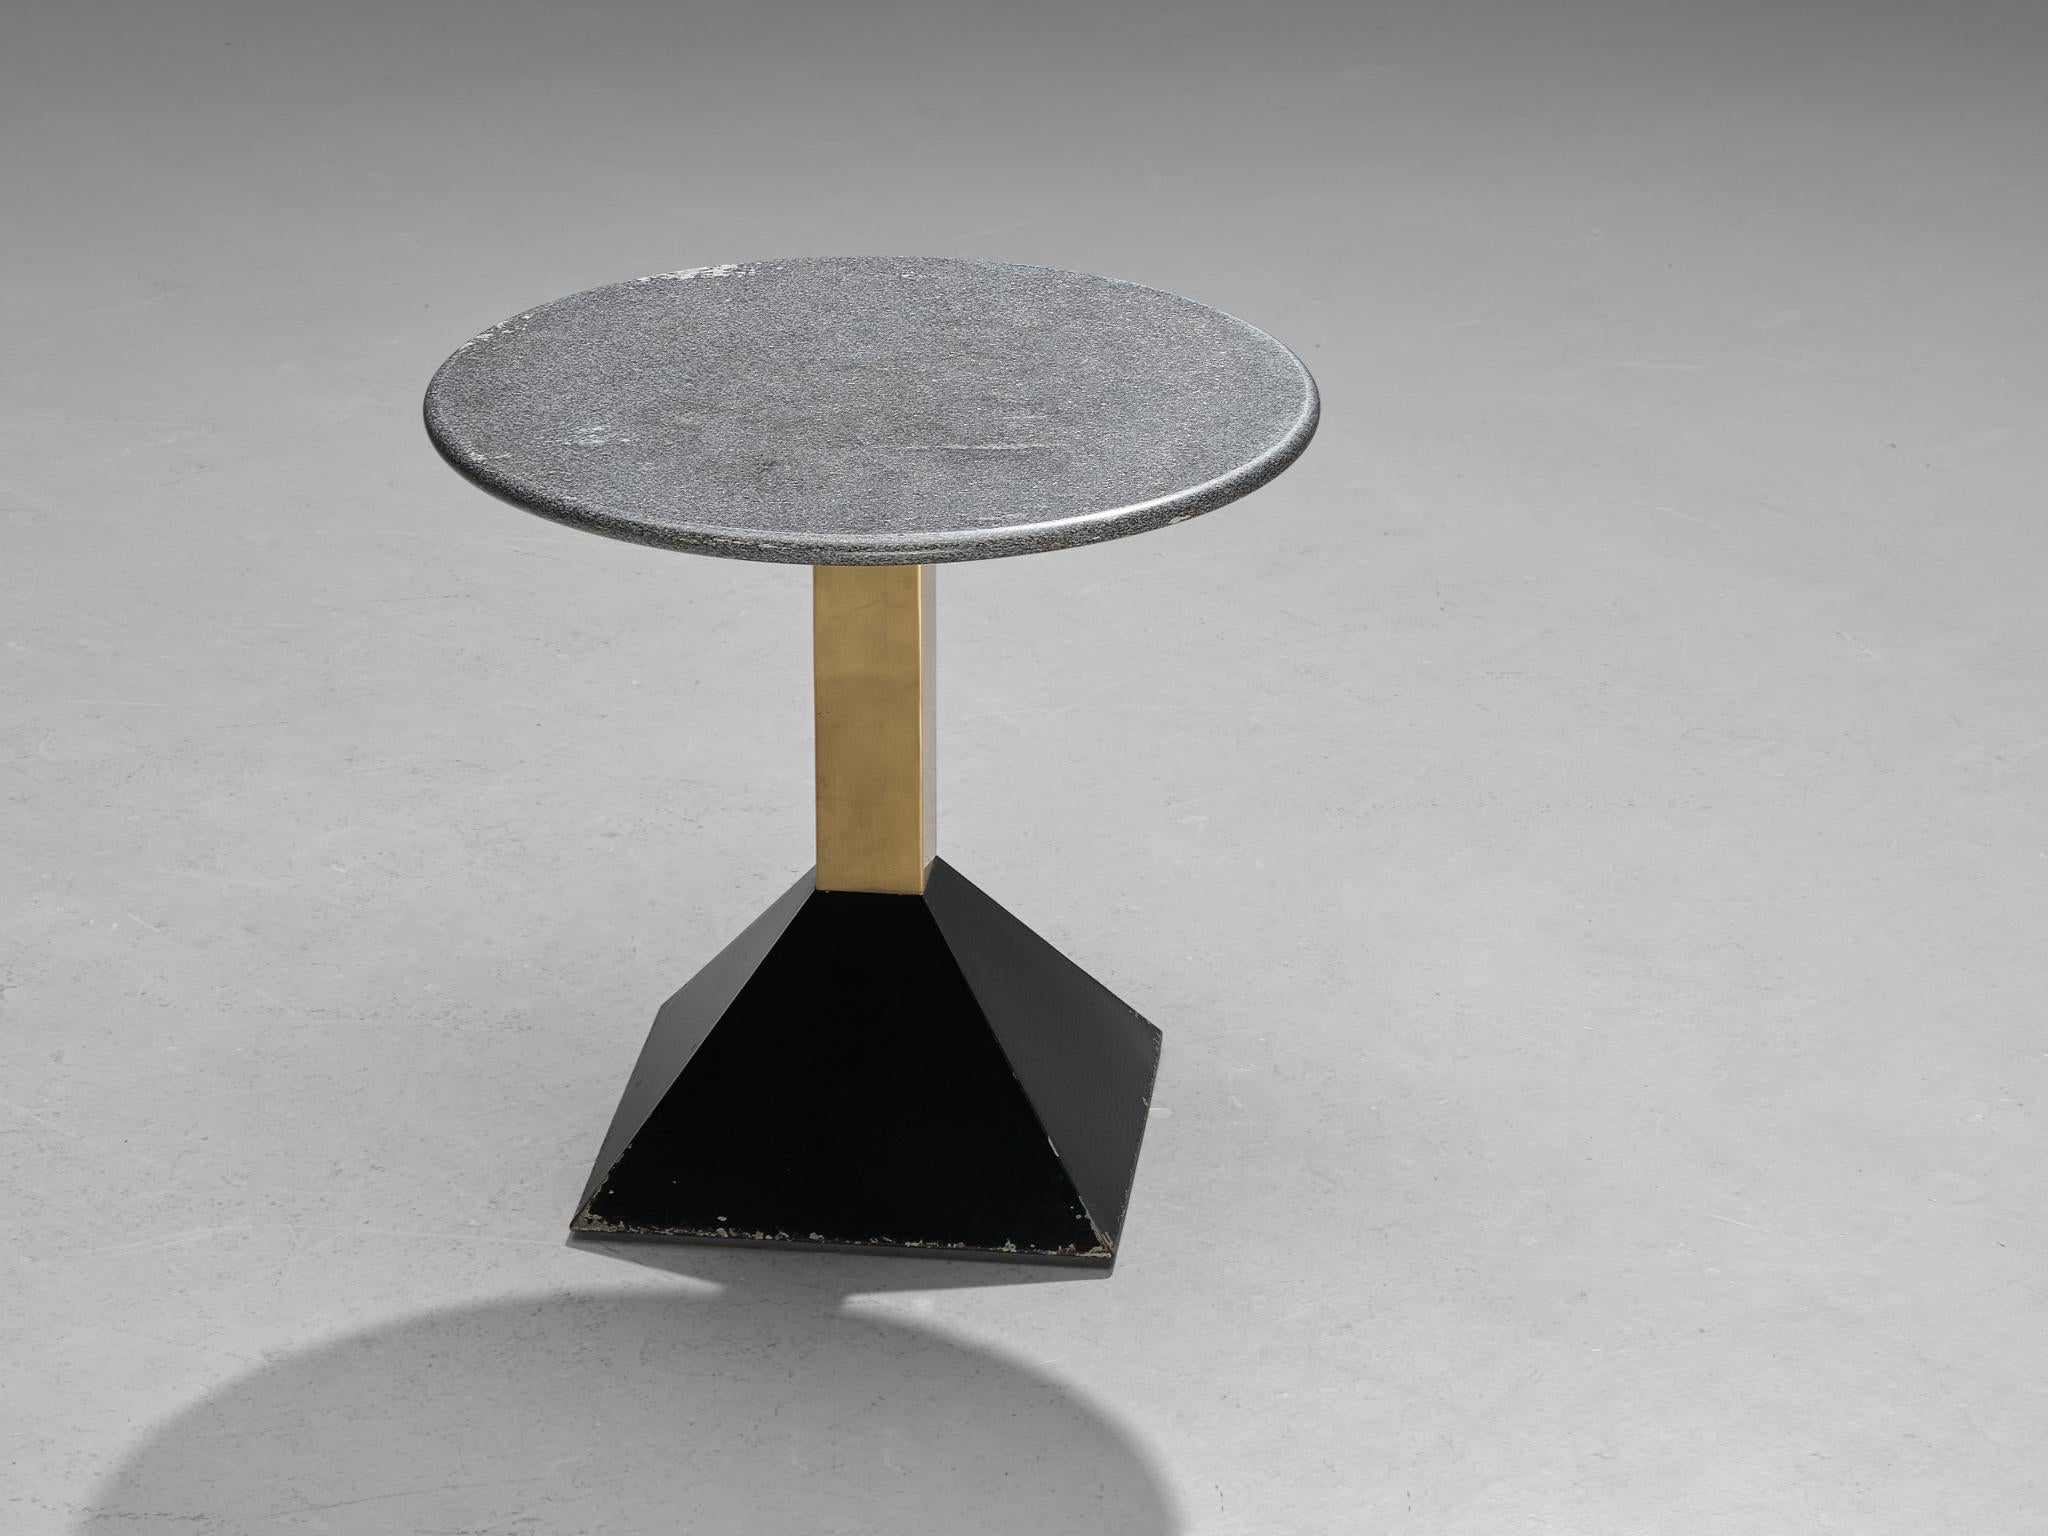 Table basse, granit, métal, laiton, Italie, années 1980

Cette table d'appoint présente un plateau gris de format rond. Le granit présente une surface vive. Un socle en laiton se termine par une base trapézoïdale en métal noir. La composition de